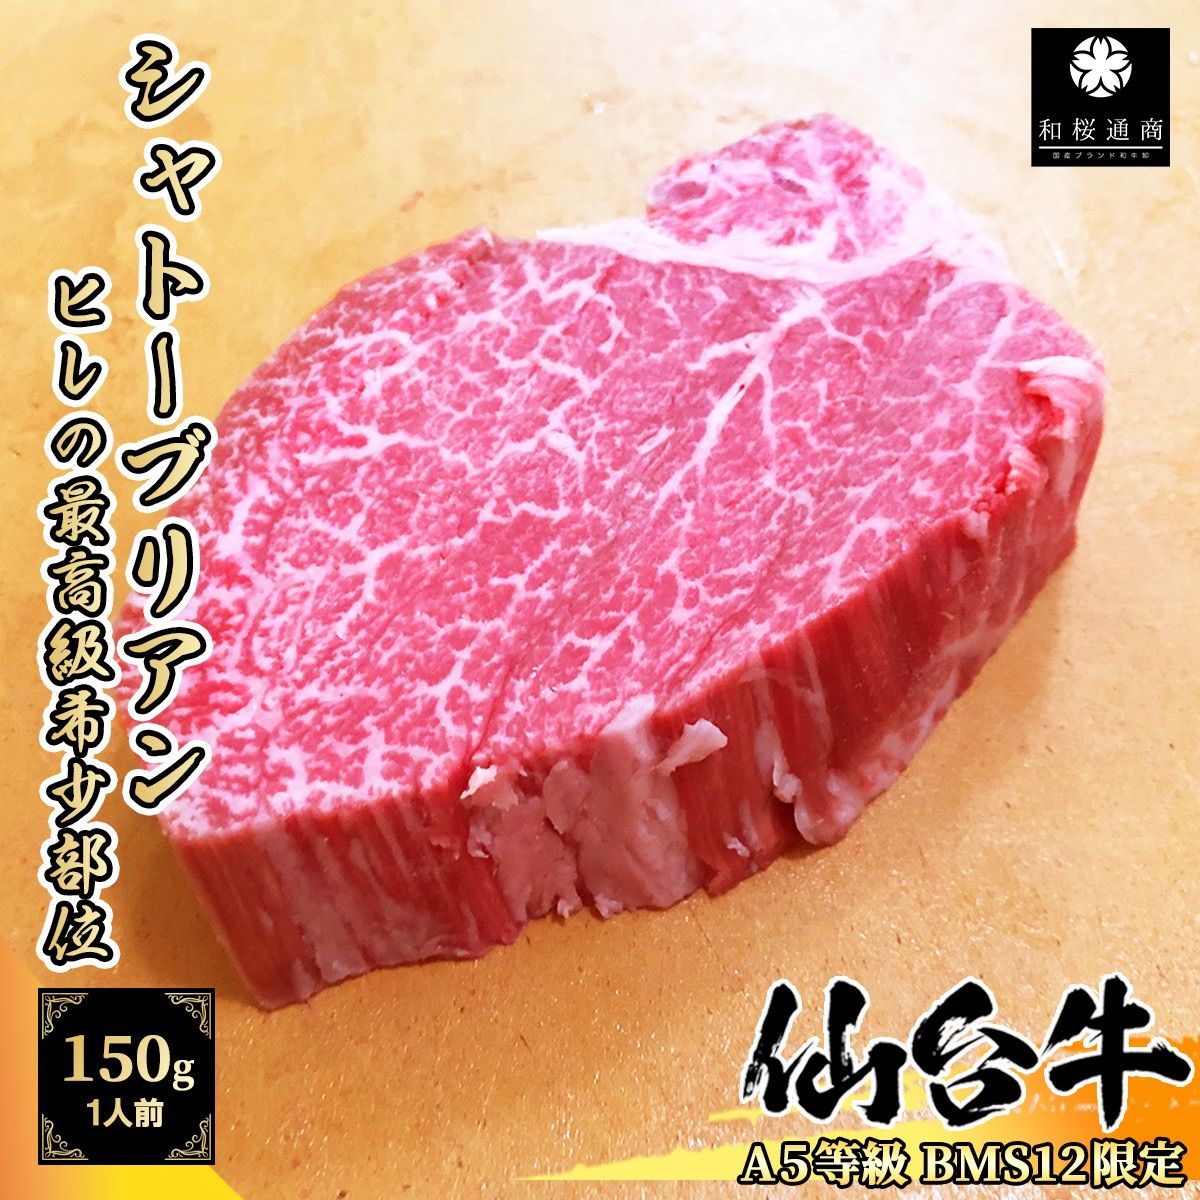 仙台牛 シャトーブリアン ステーキ1枚150g A5等級黒毛和牛 - 和牛専門